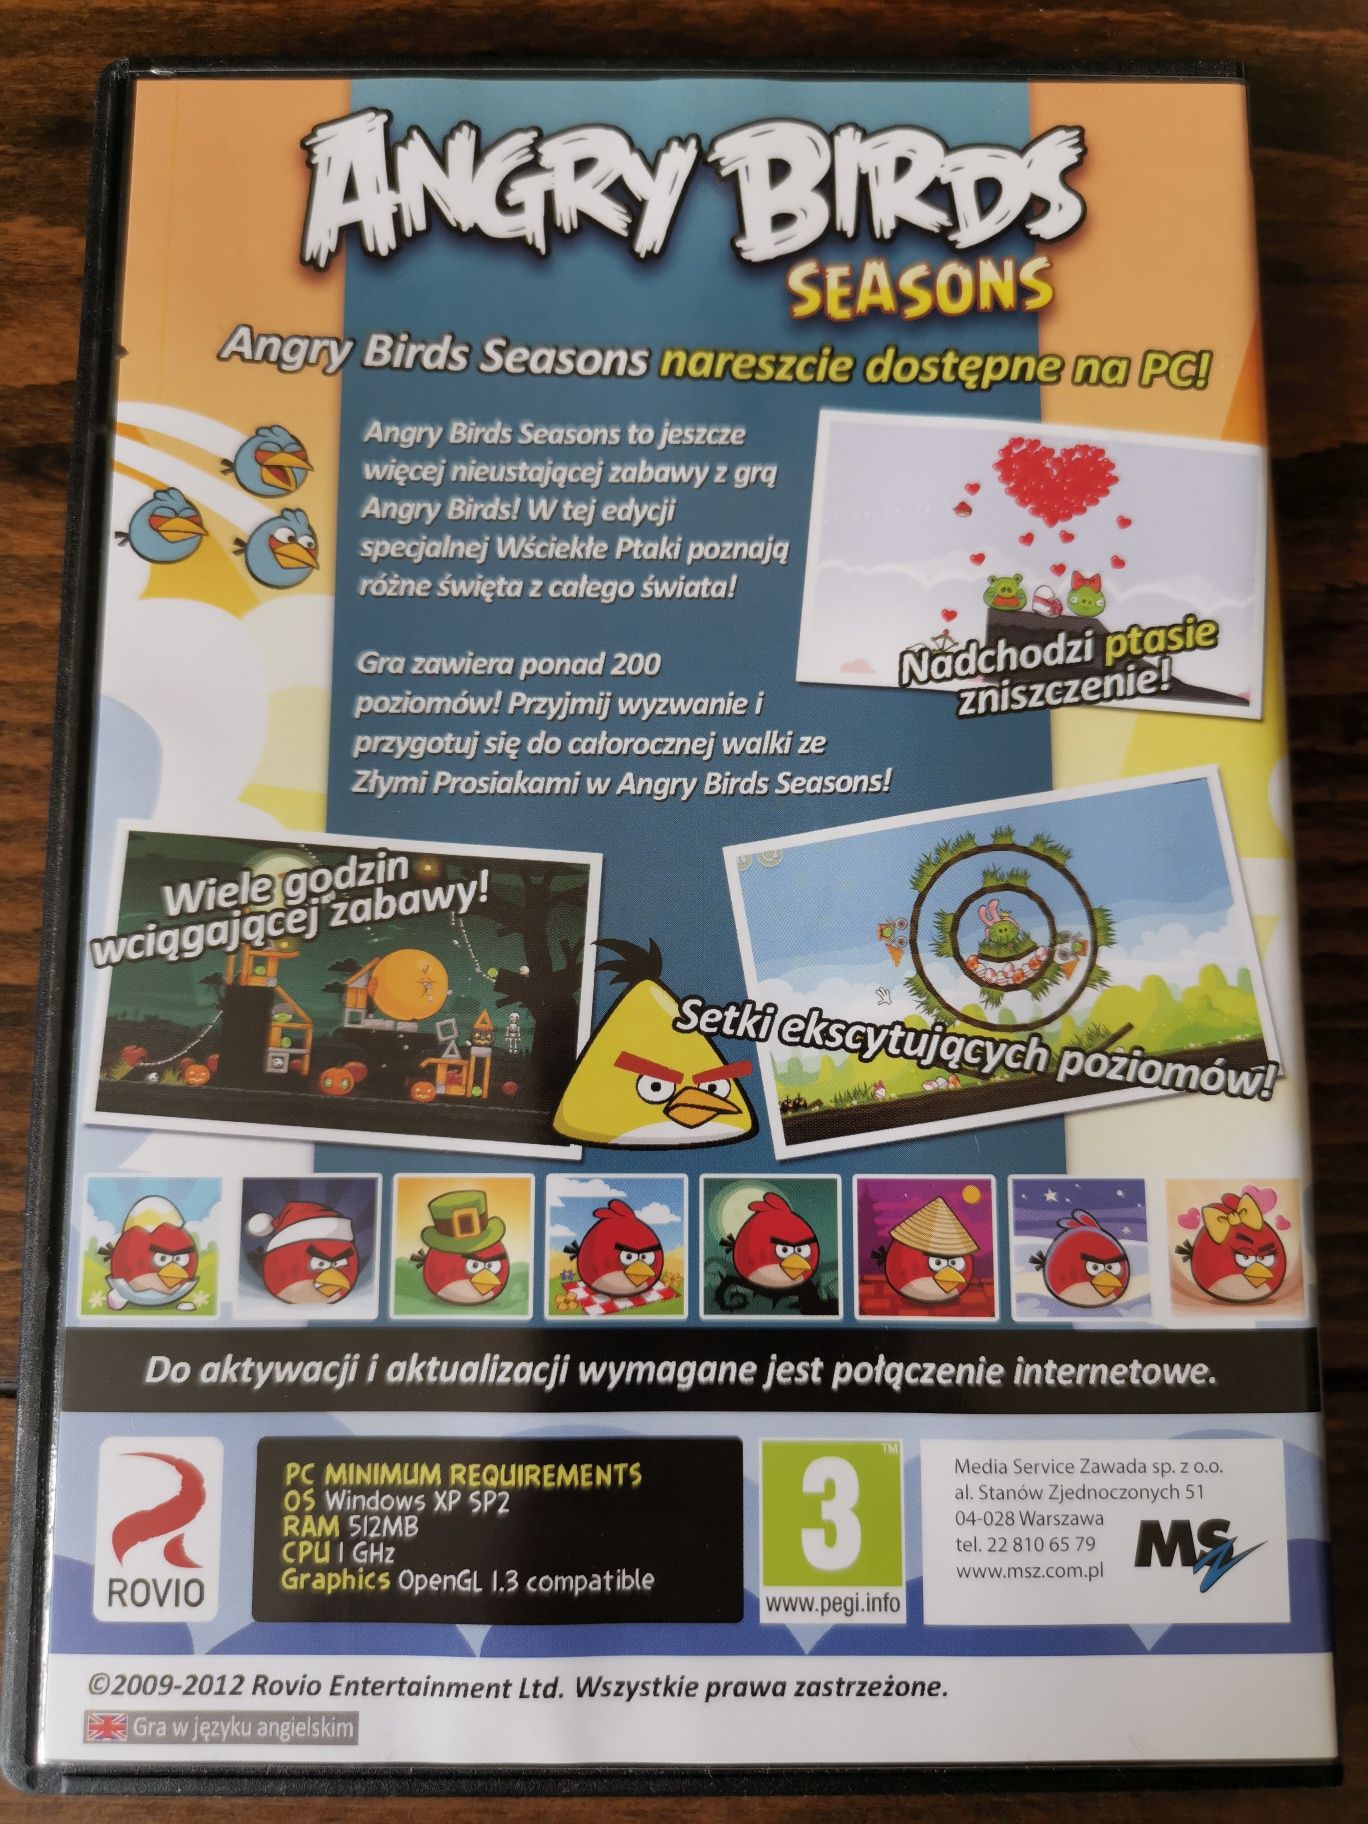 Angry Birds season gra na PC